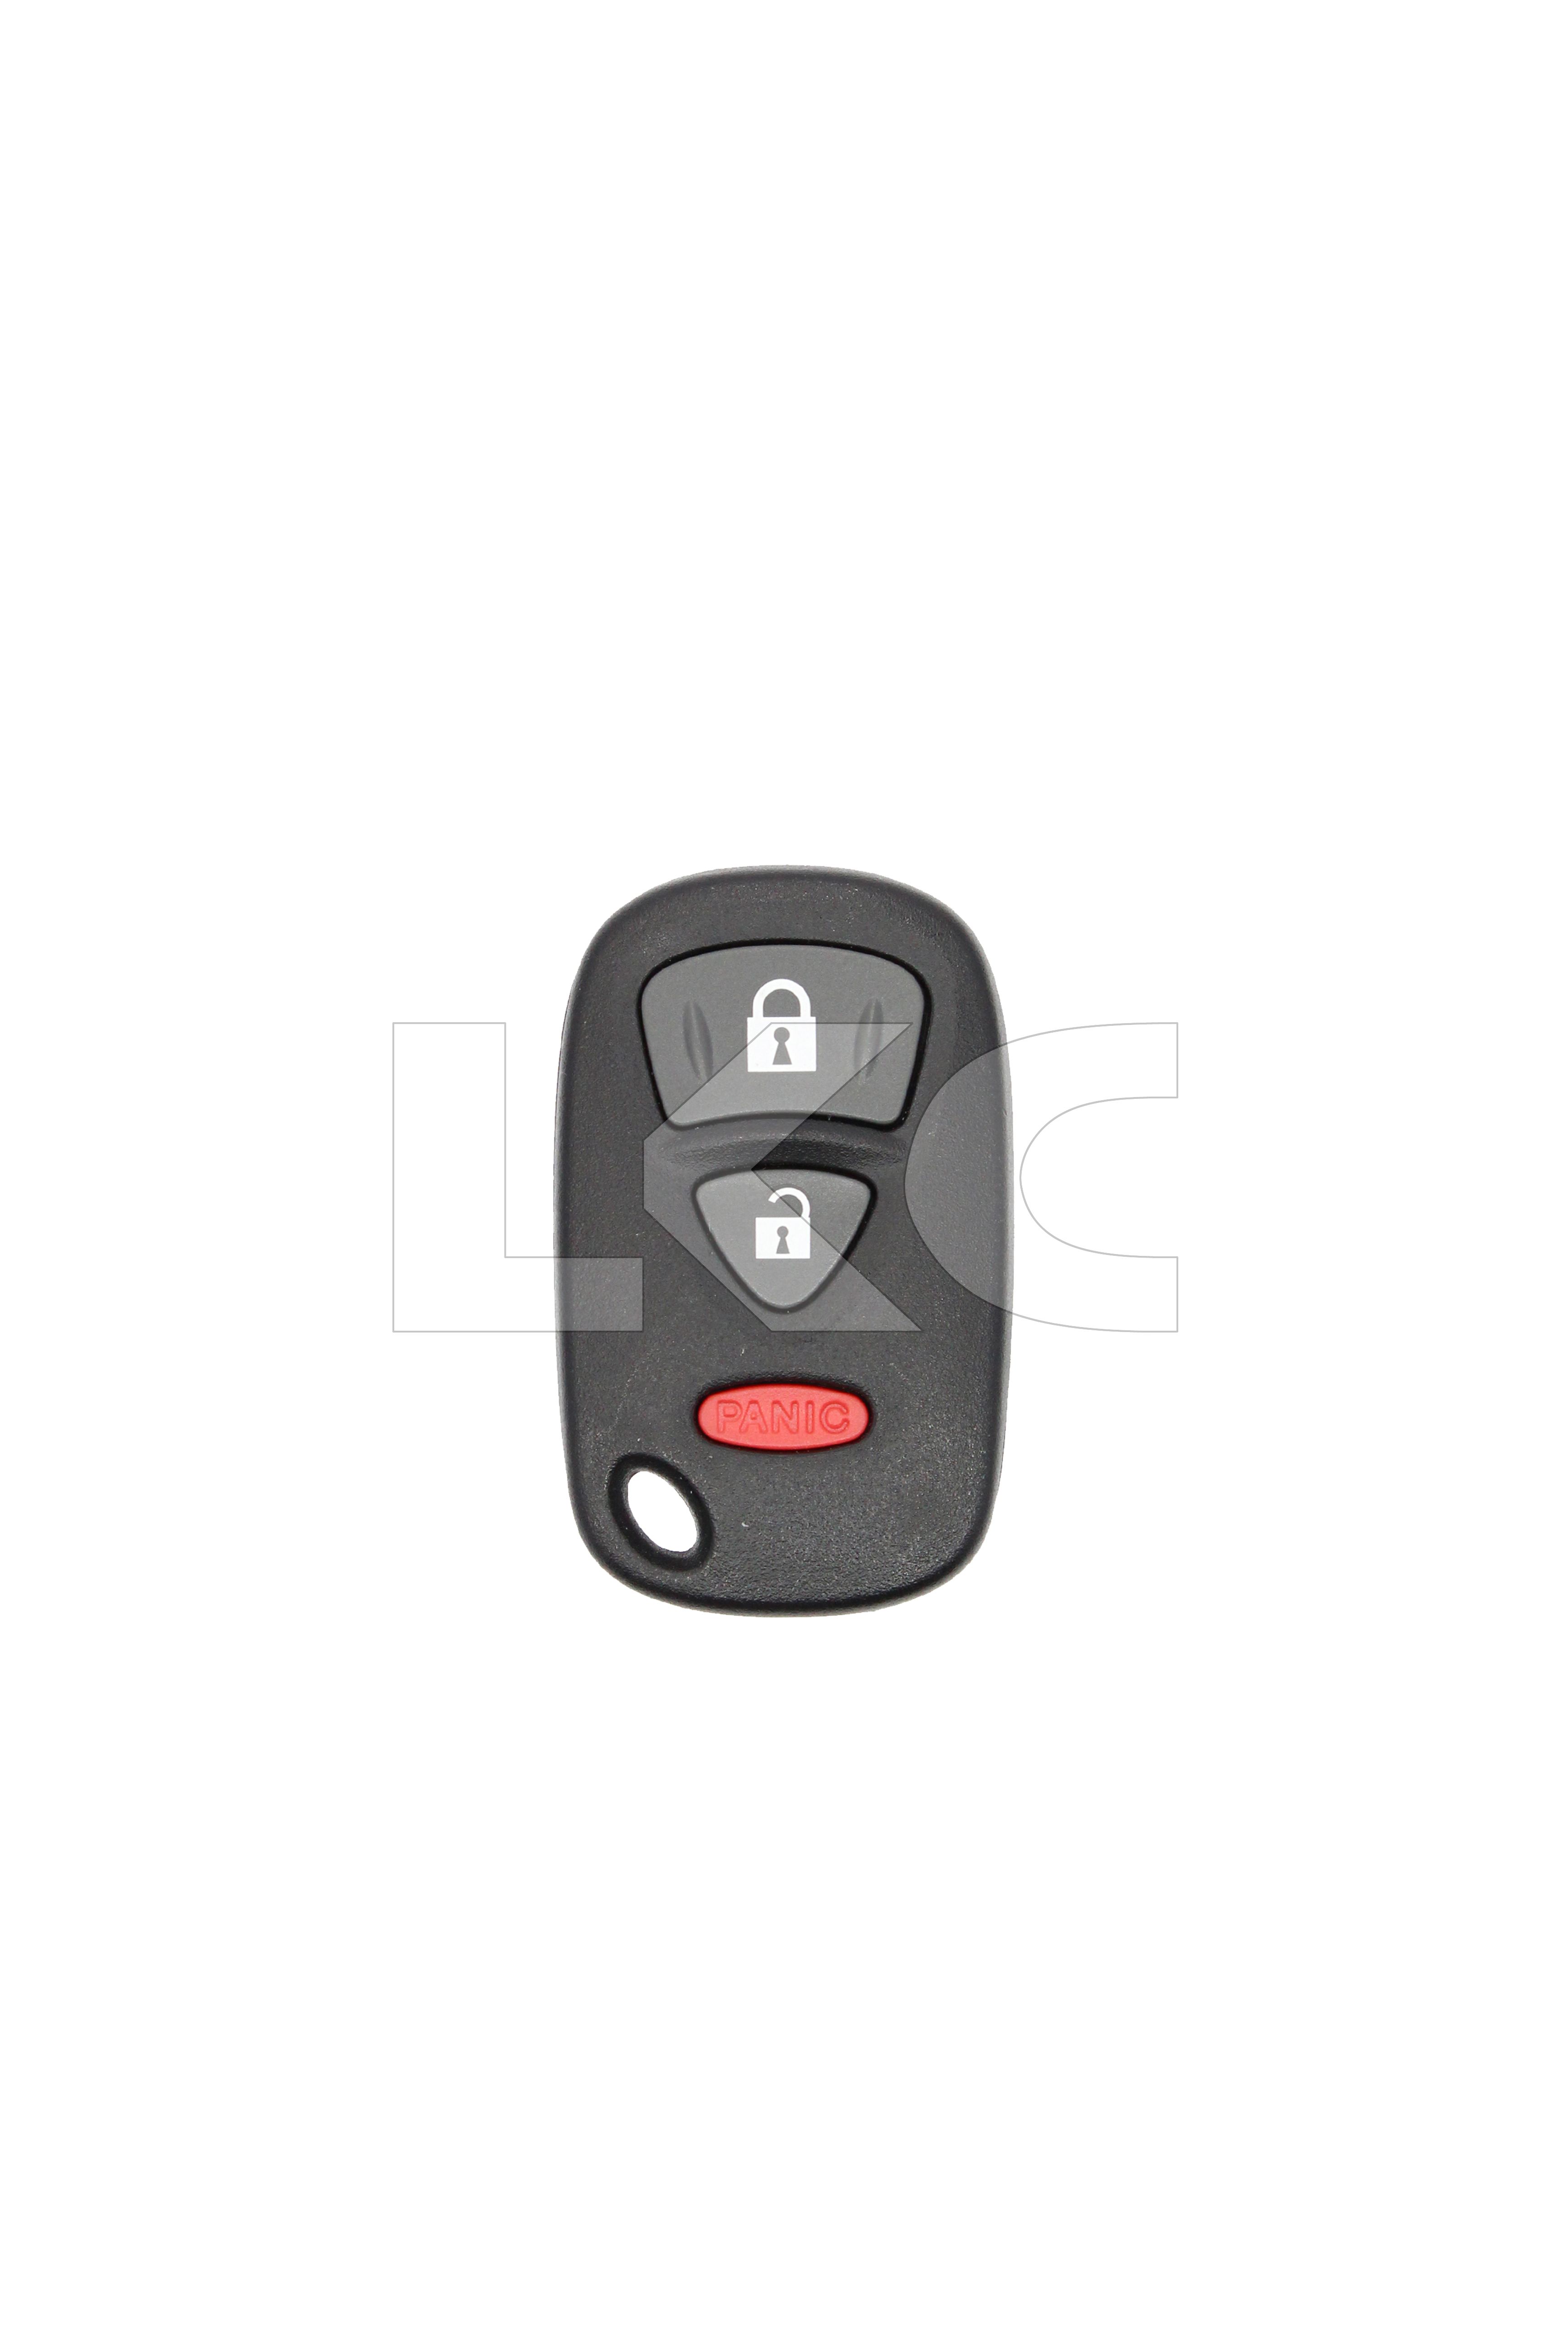 2004 - 2012 Suzuki 3 Button Keyless Entry Remote Fob - KBRTS005